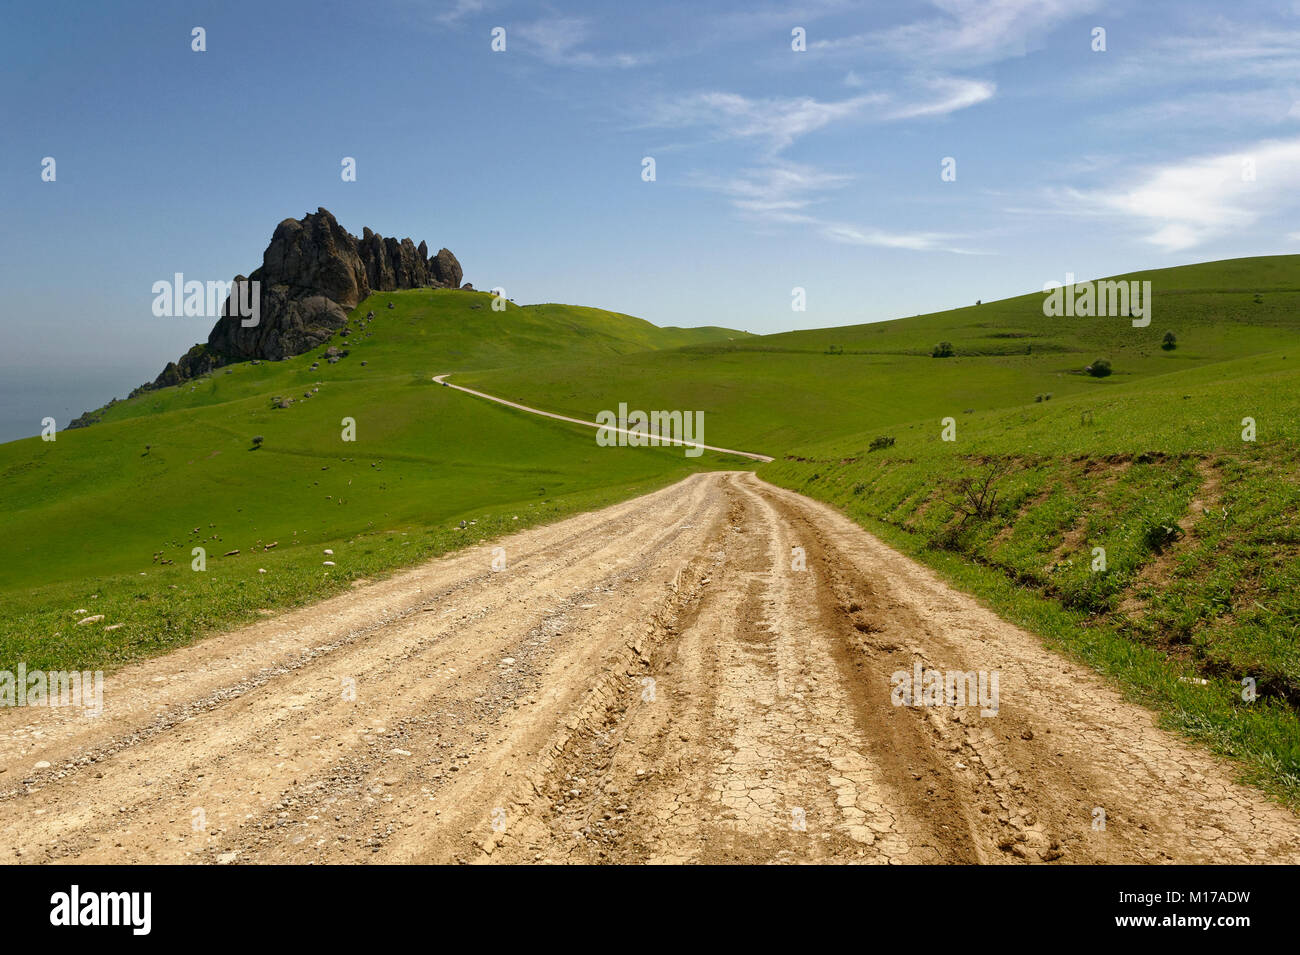 La route de l'Besh Barmag ou cinq doigts Mountain, près de Bakou, en Azerbaïdjan. Banque D'Images